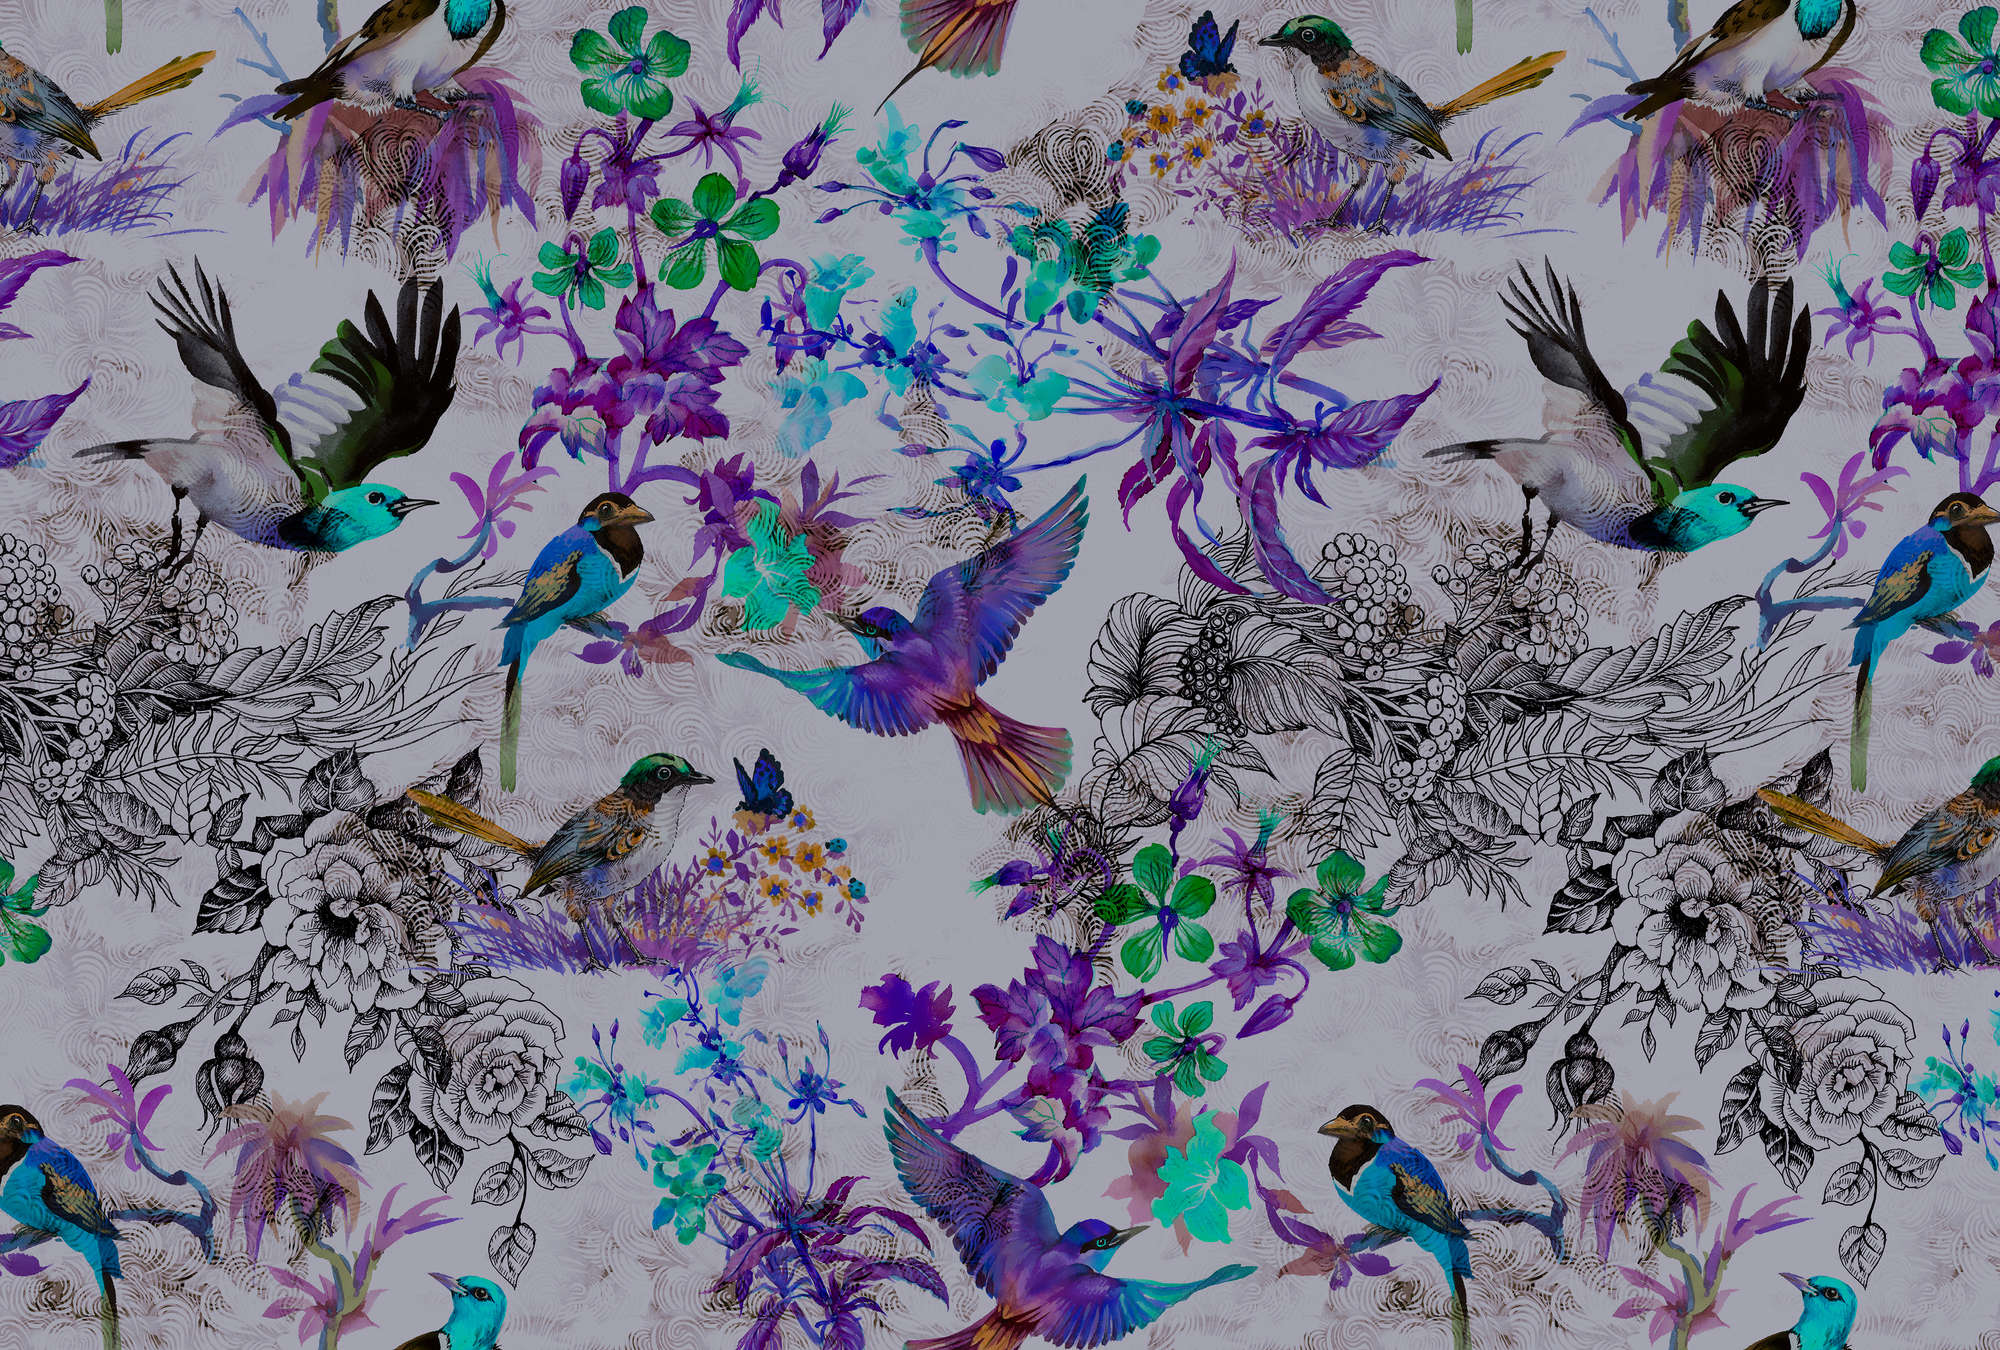             Papier peint violet avec des fleurs et des oiseaux - bleu, gris
        